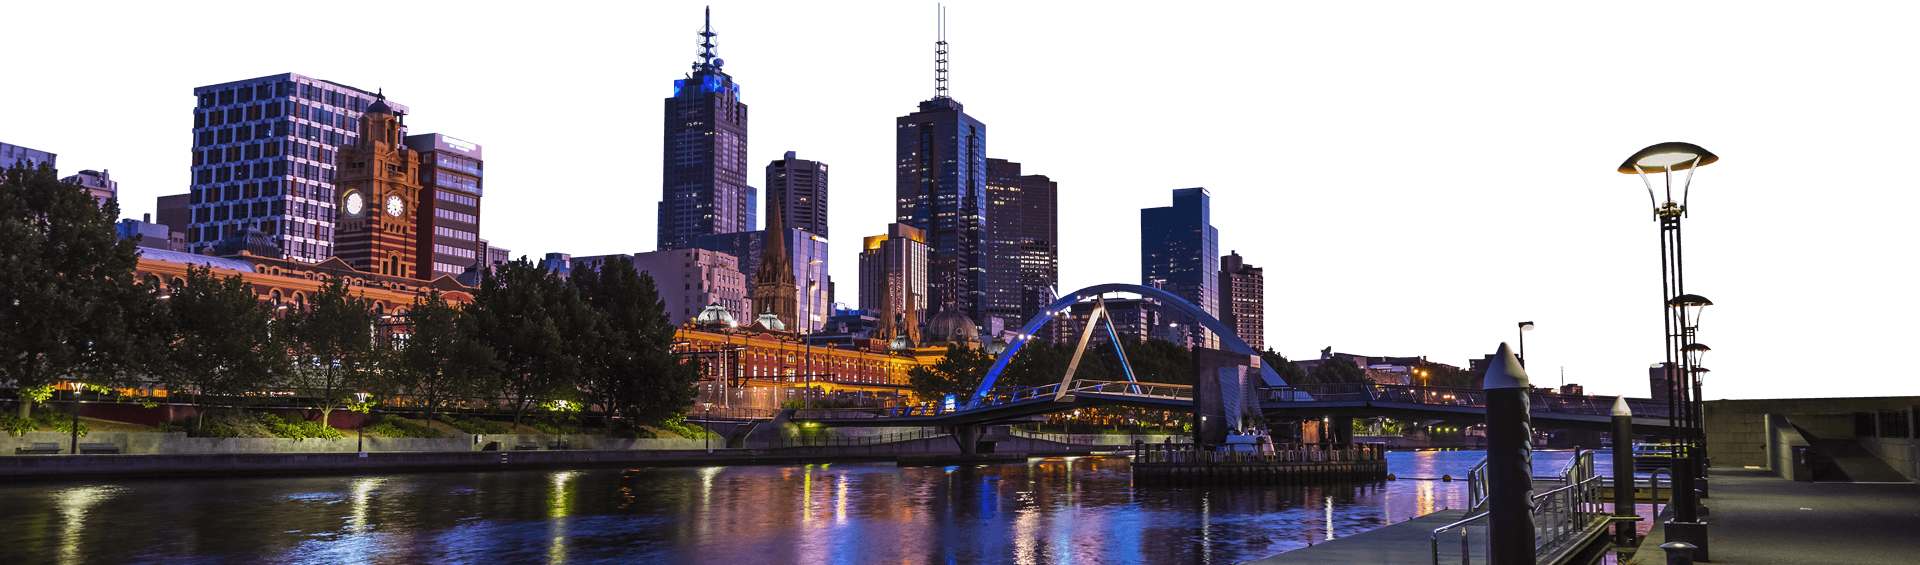 Melbourne City Skyline PNG Image